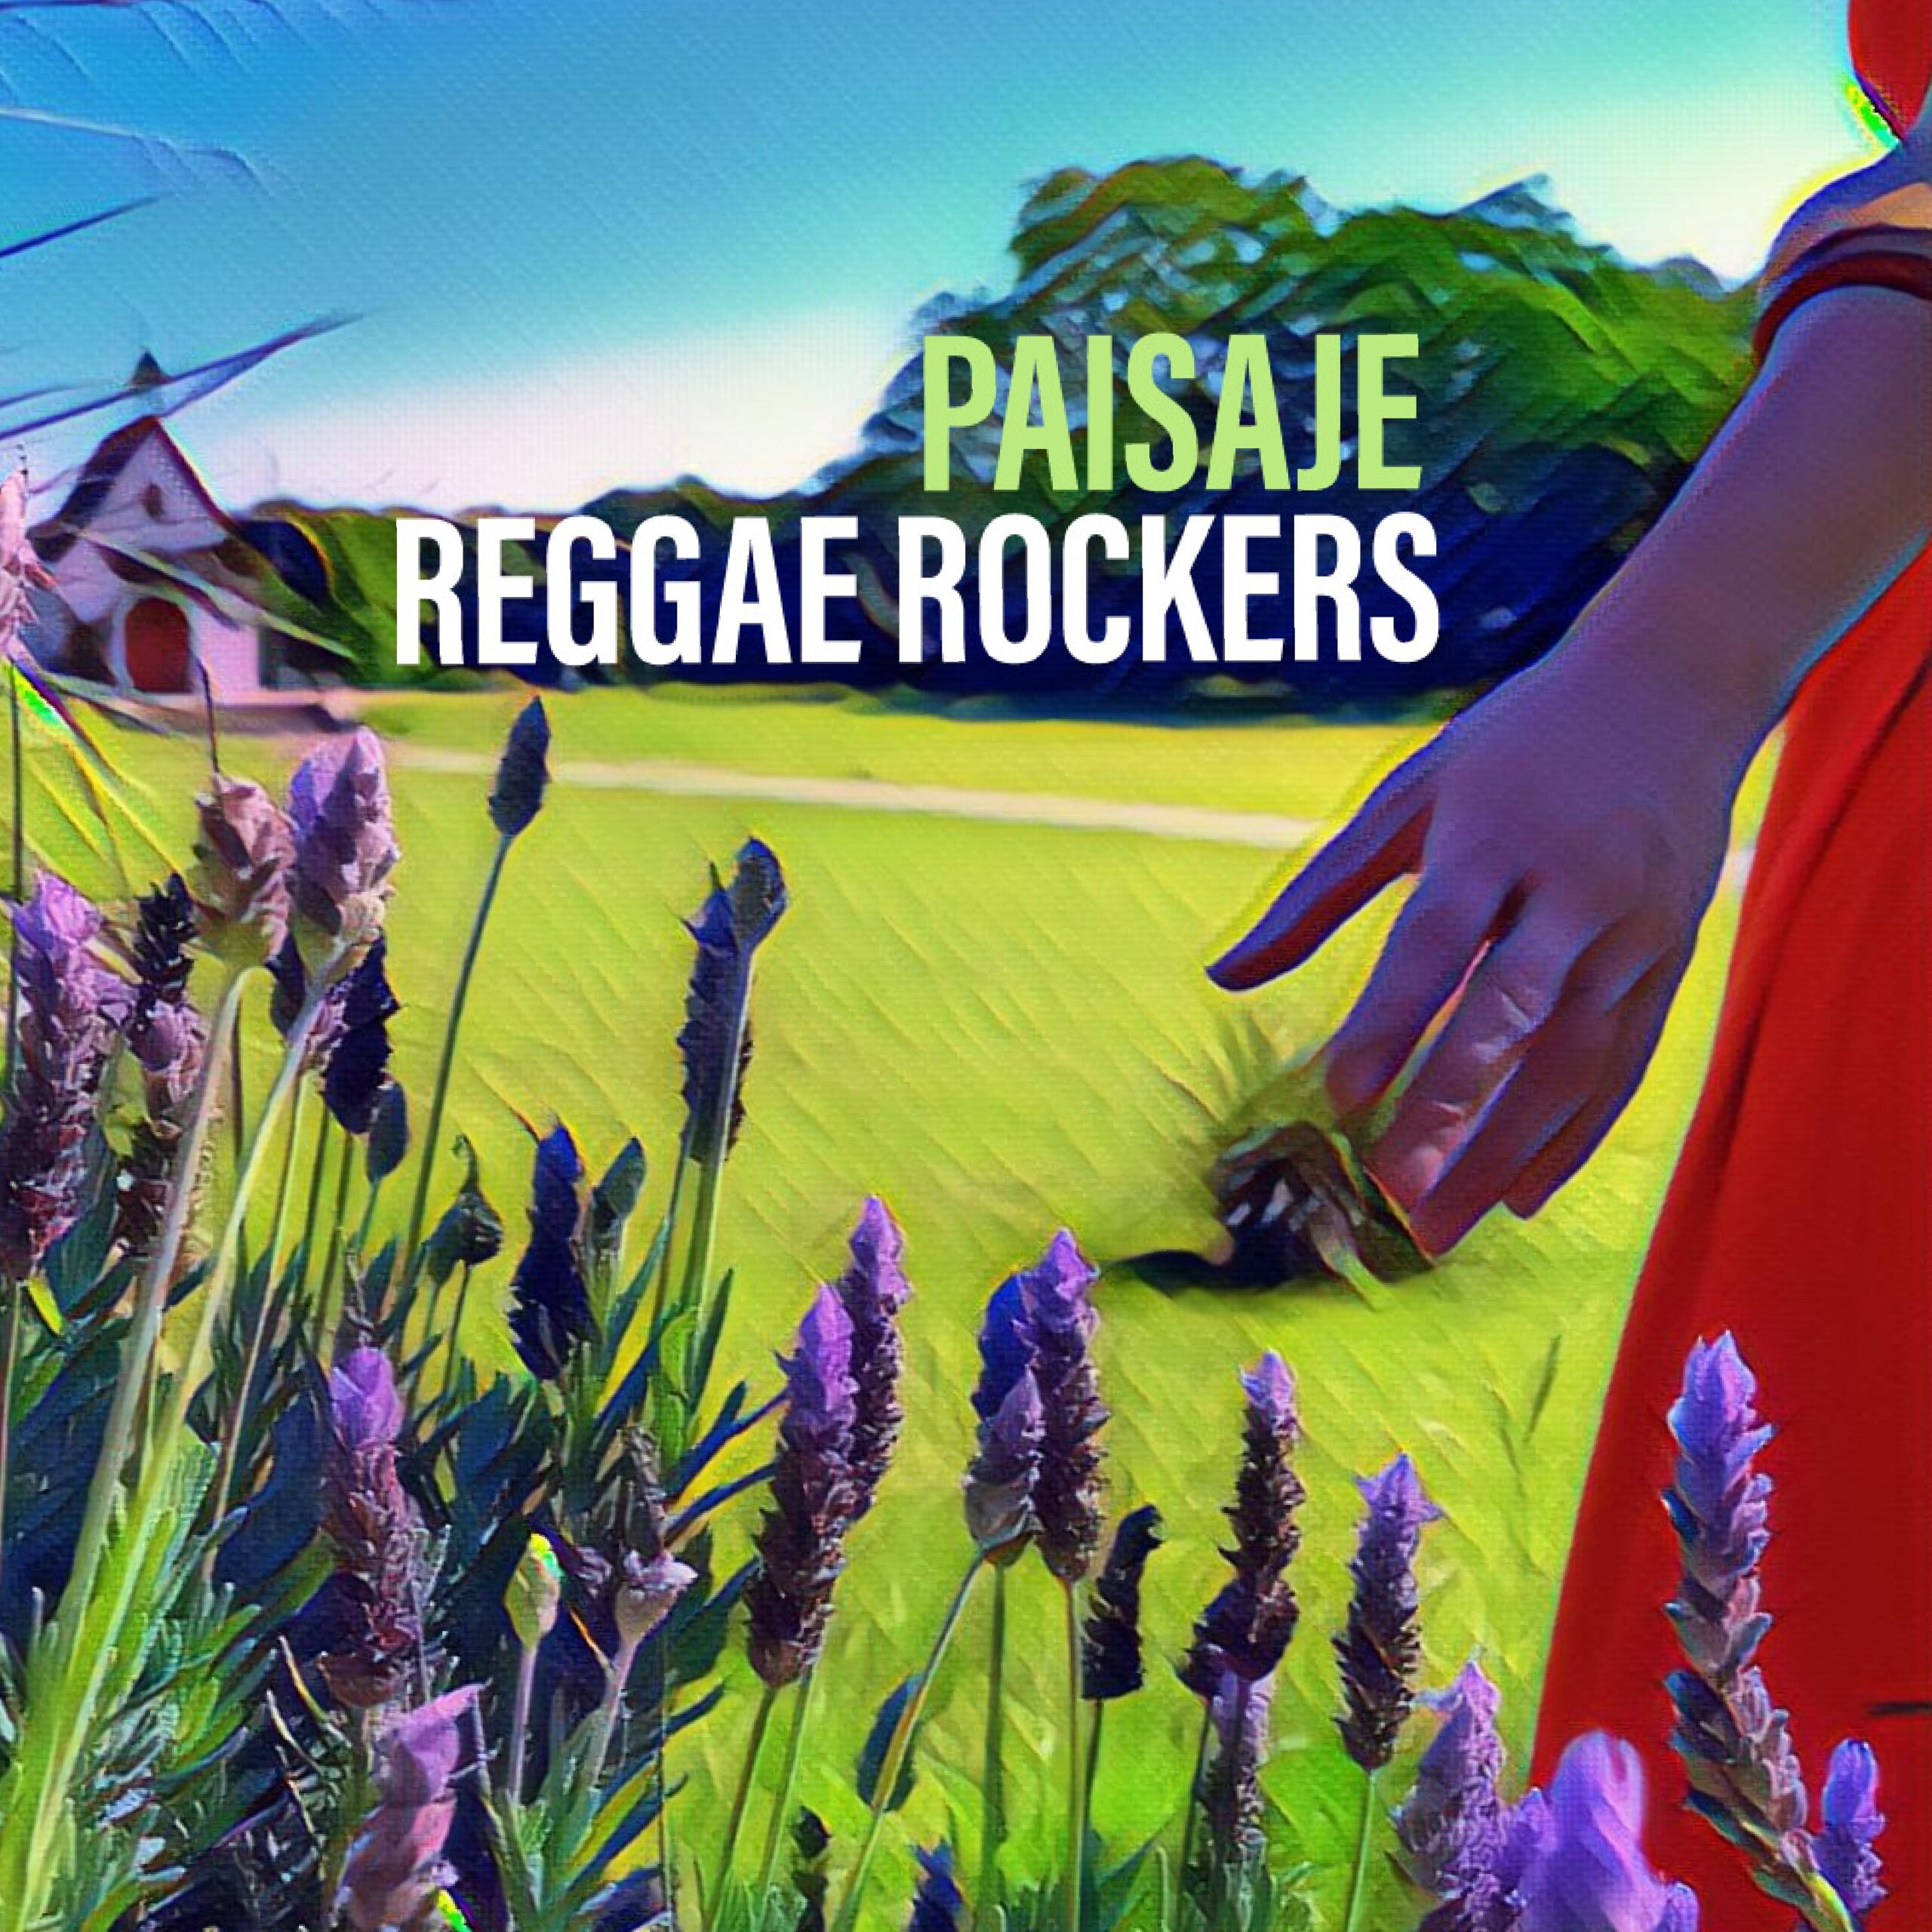  Reggae Rockers presenta Paisaje